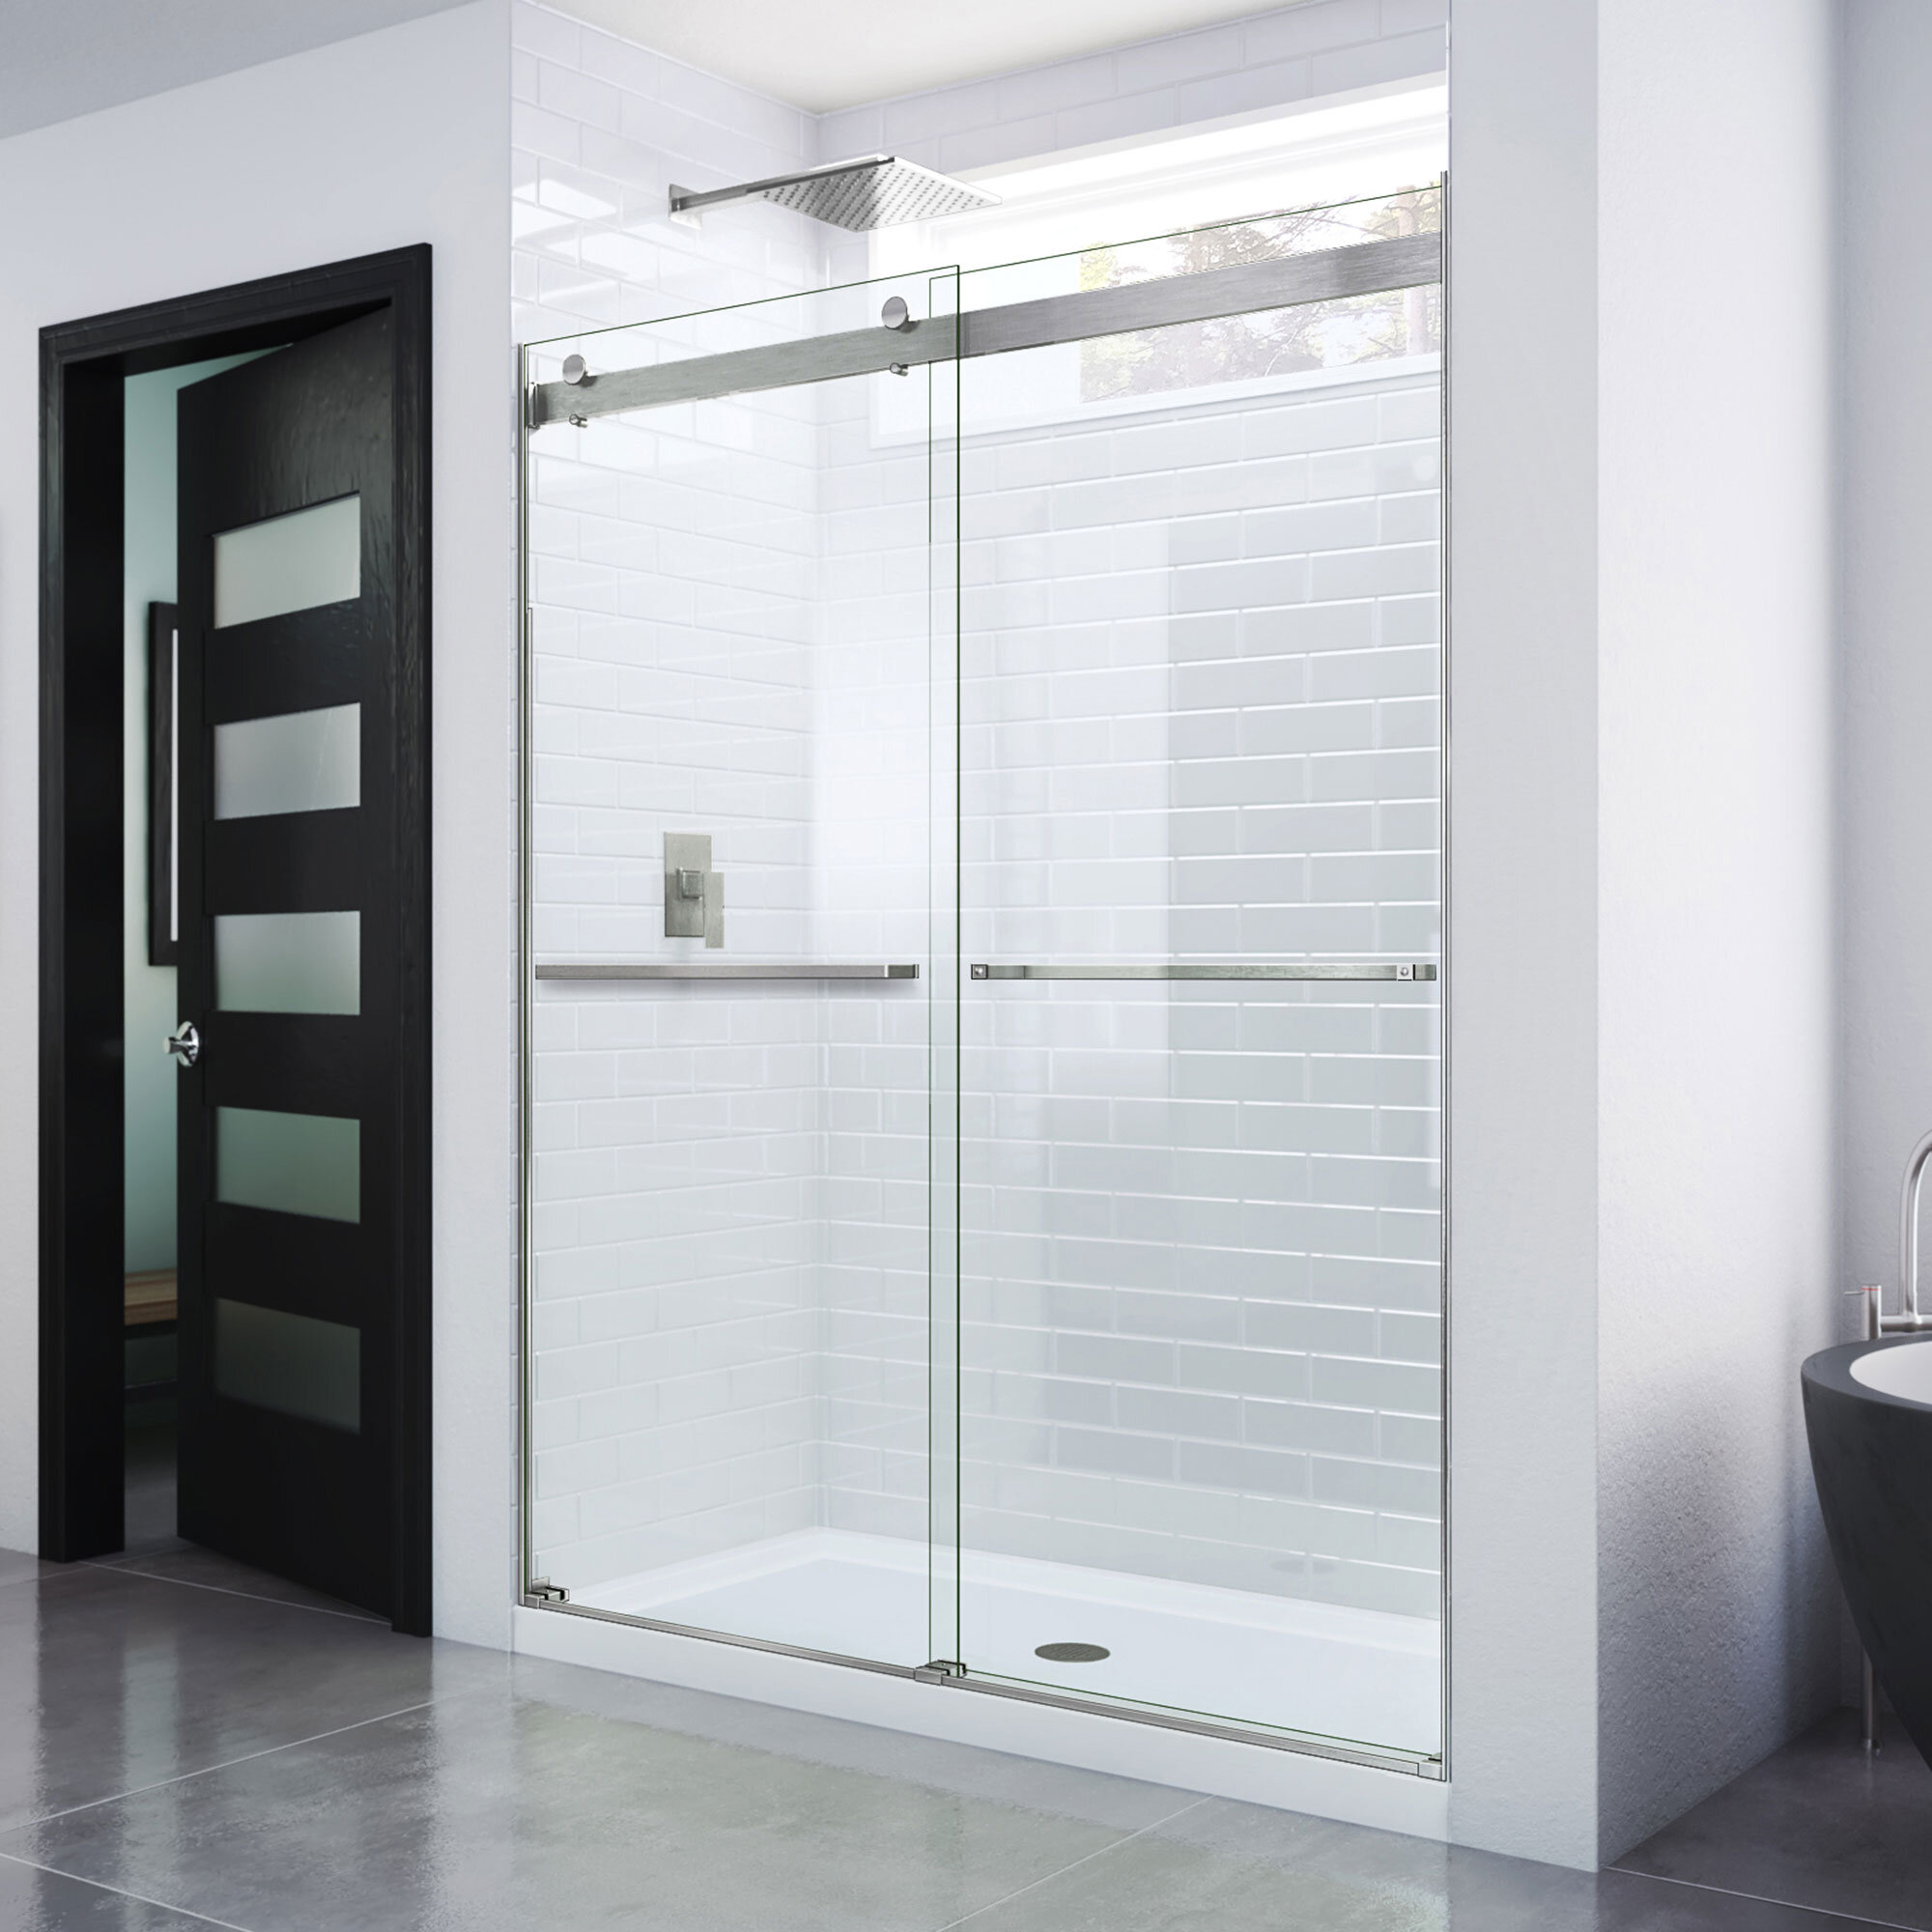 VTI 60'' W x 72'' H Bypass Semi-Frameless Shower Door with Clear